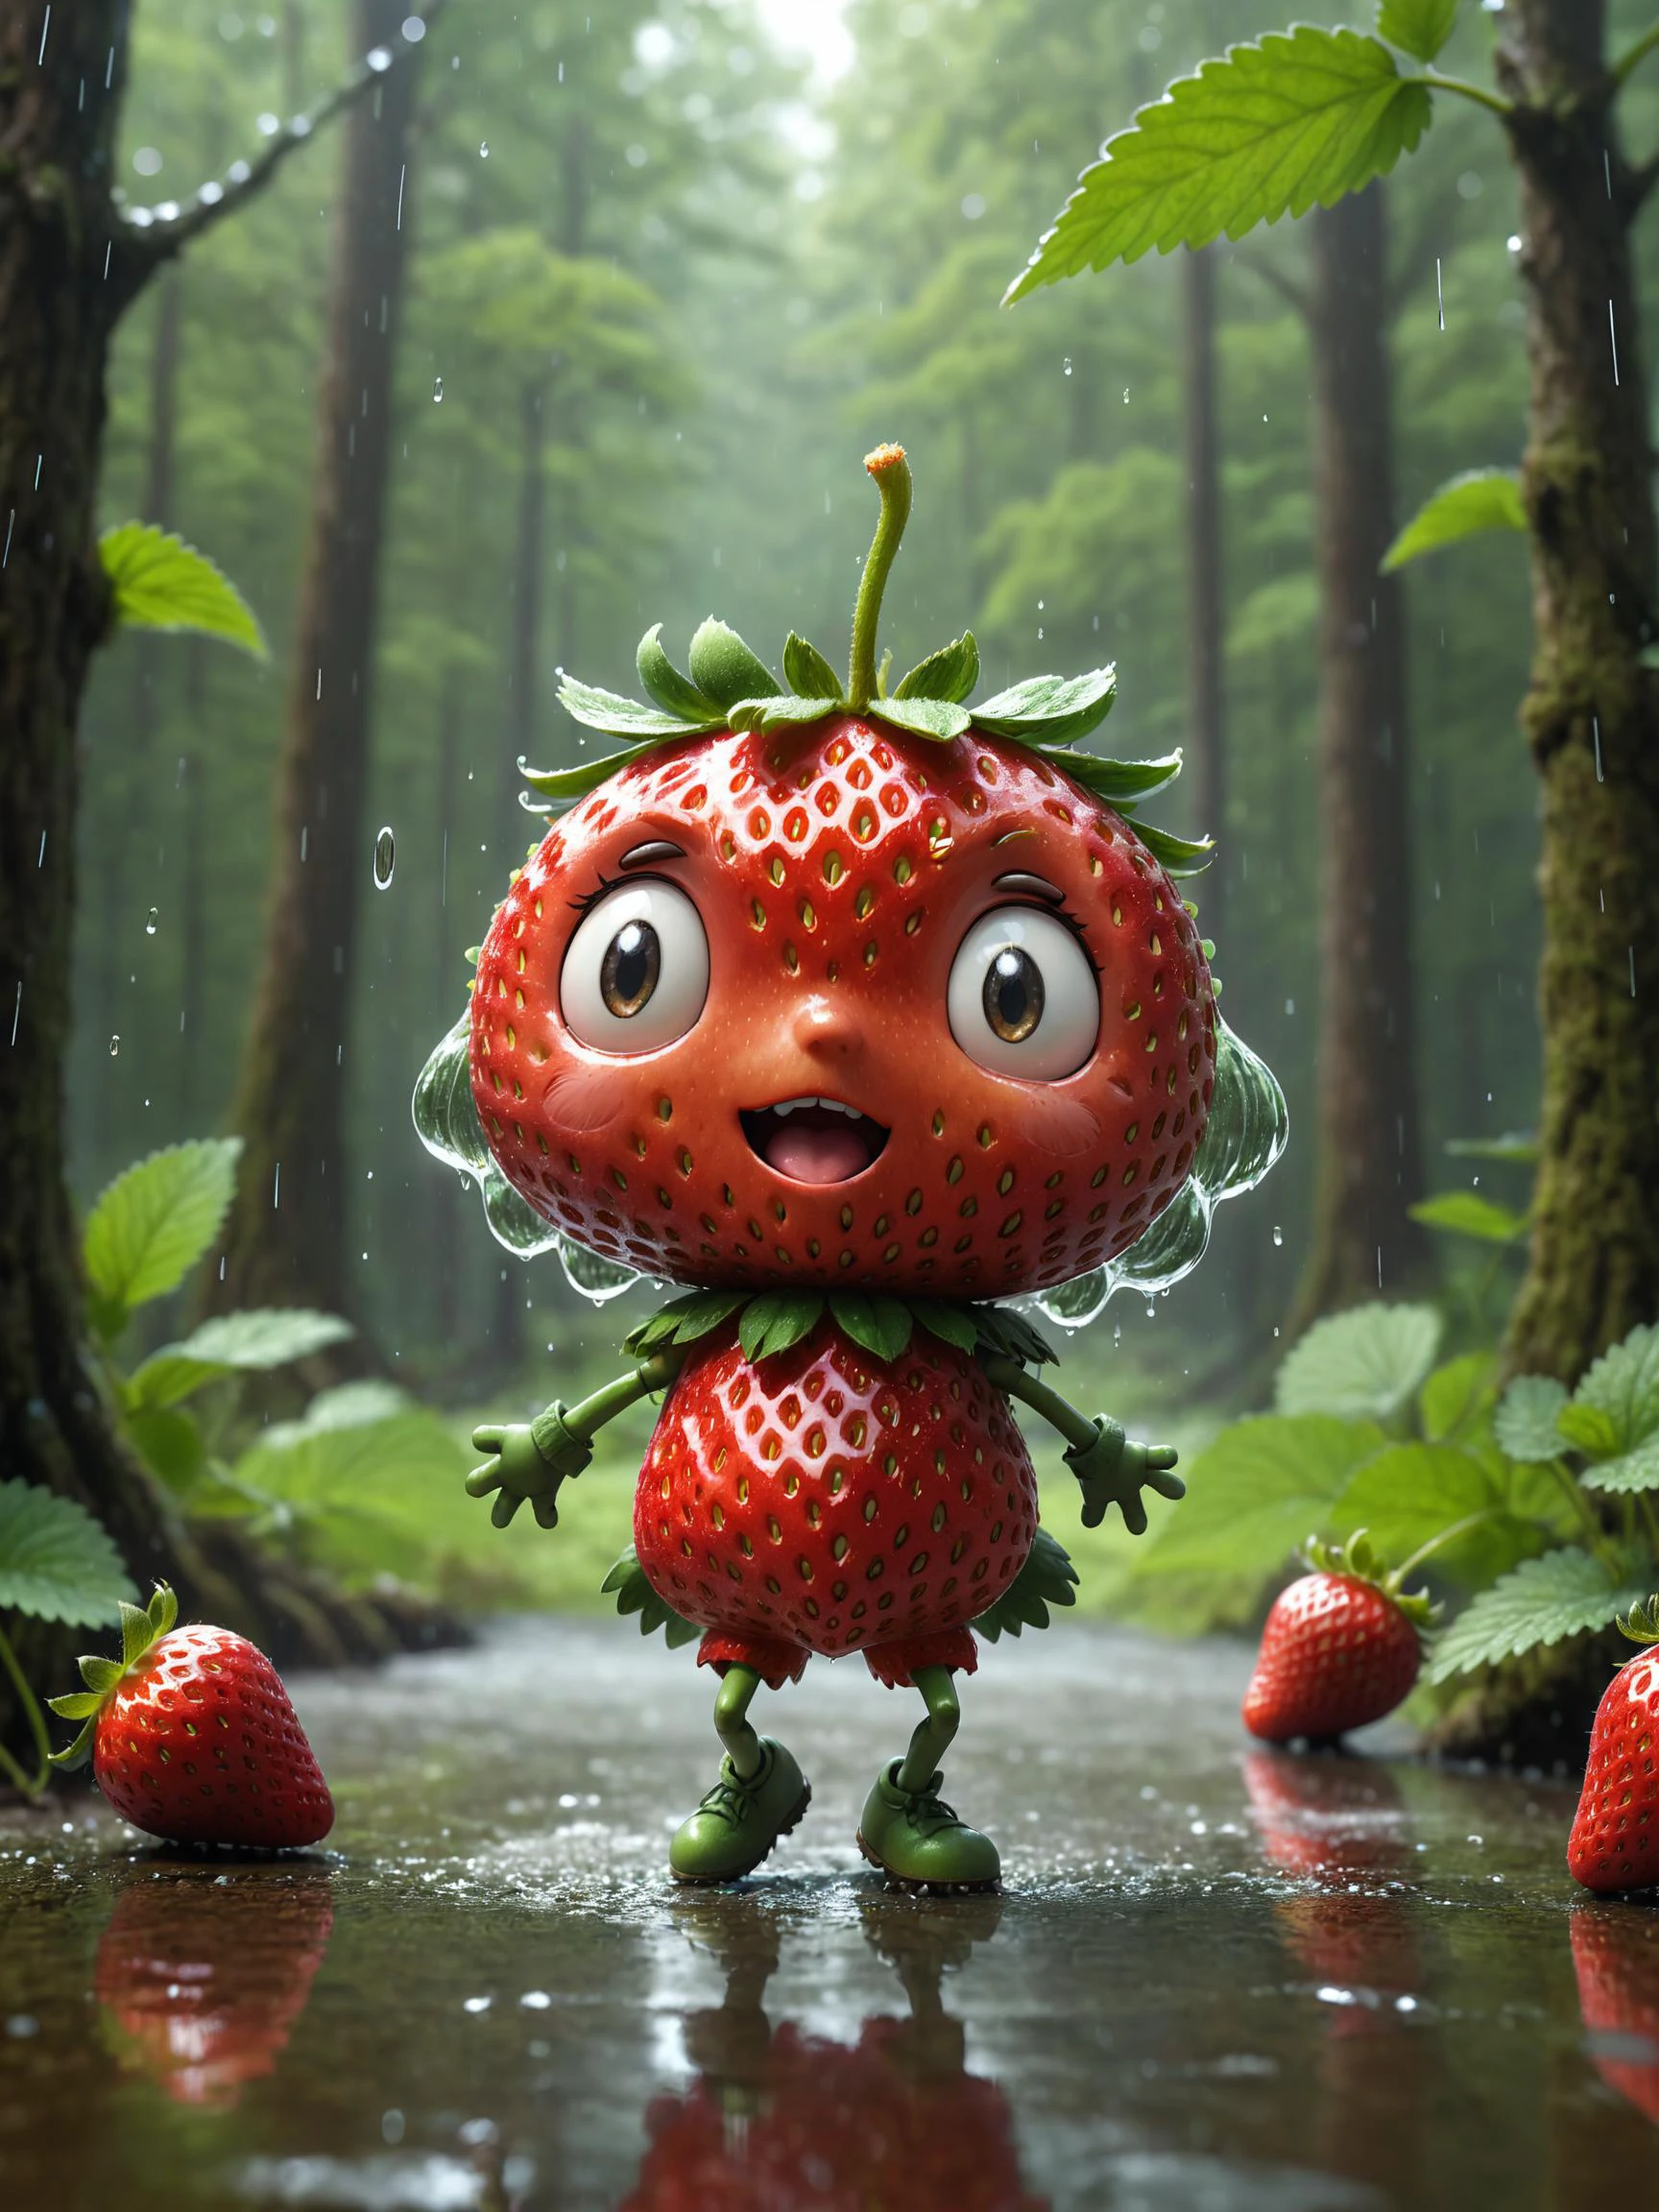 (擬人化人形草莓:1.4) (跳舞:1.2) 在森林裡, 下雨, 動態動作照片人物概念藝術, 日本卡通, 吉卜力工作室, 插圖, 2d, 傑作, 高品質, 8k 超高清 高清 4k, 趨勢, 受欢迎的, 詳細背景, 淺景深, 反思